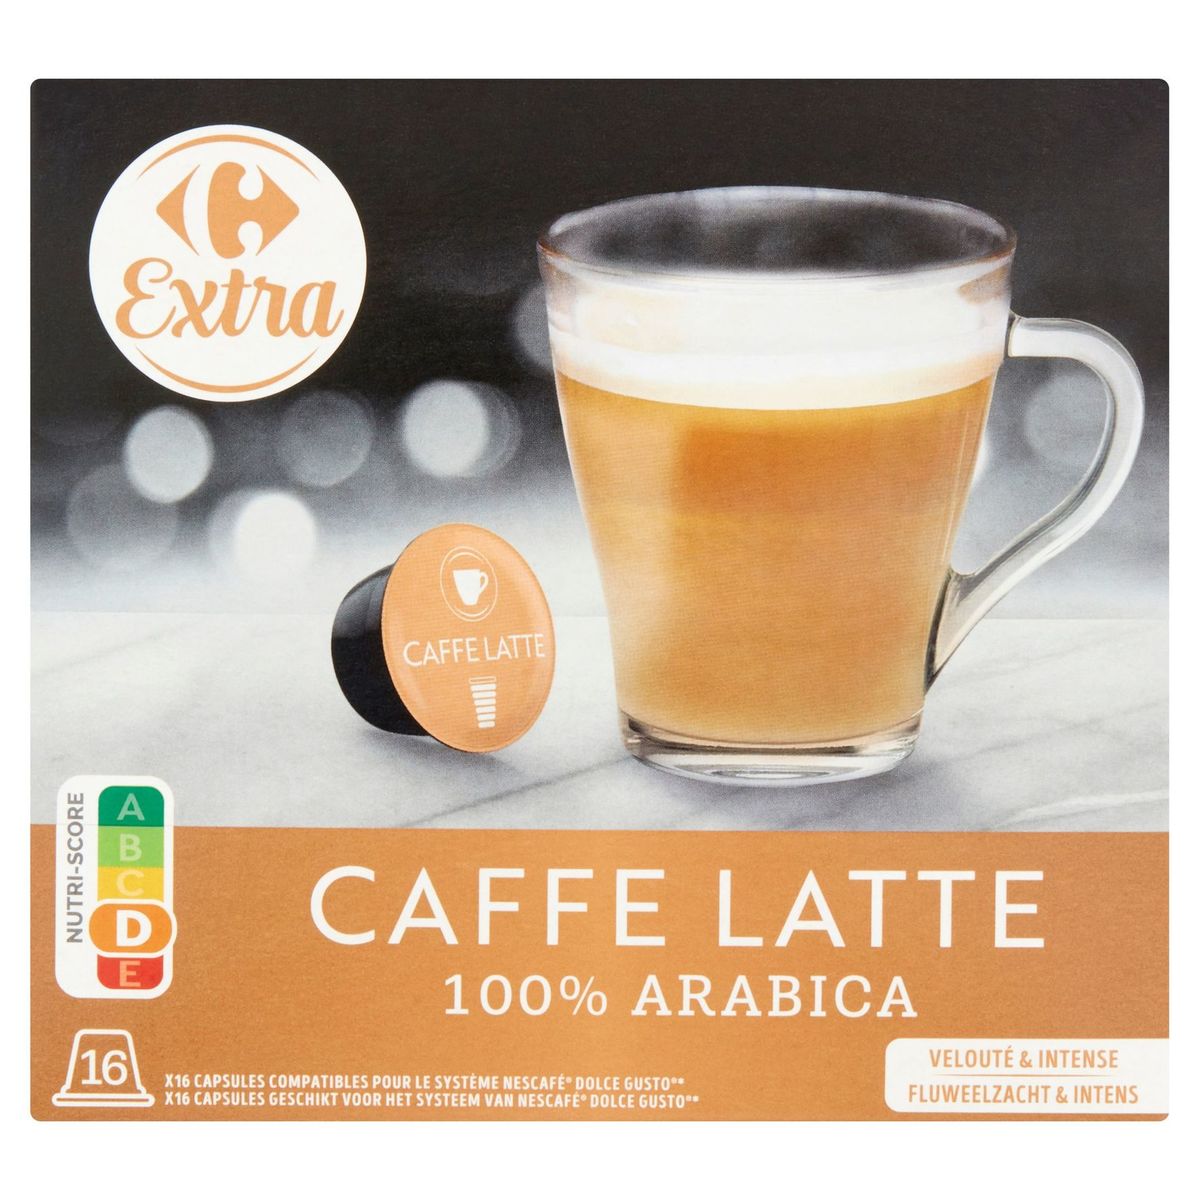 Carrefour Extra Caffe Latte 16 x 9.7 g